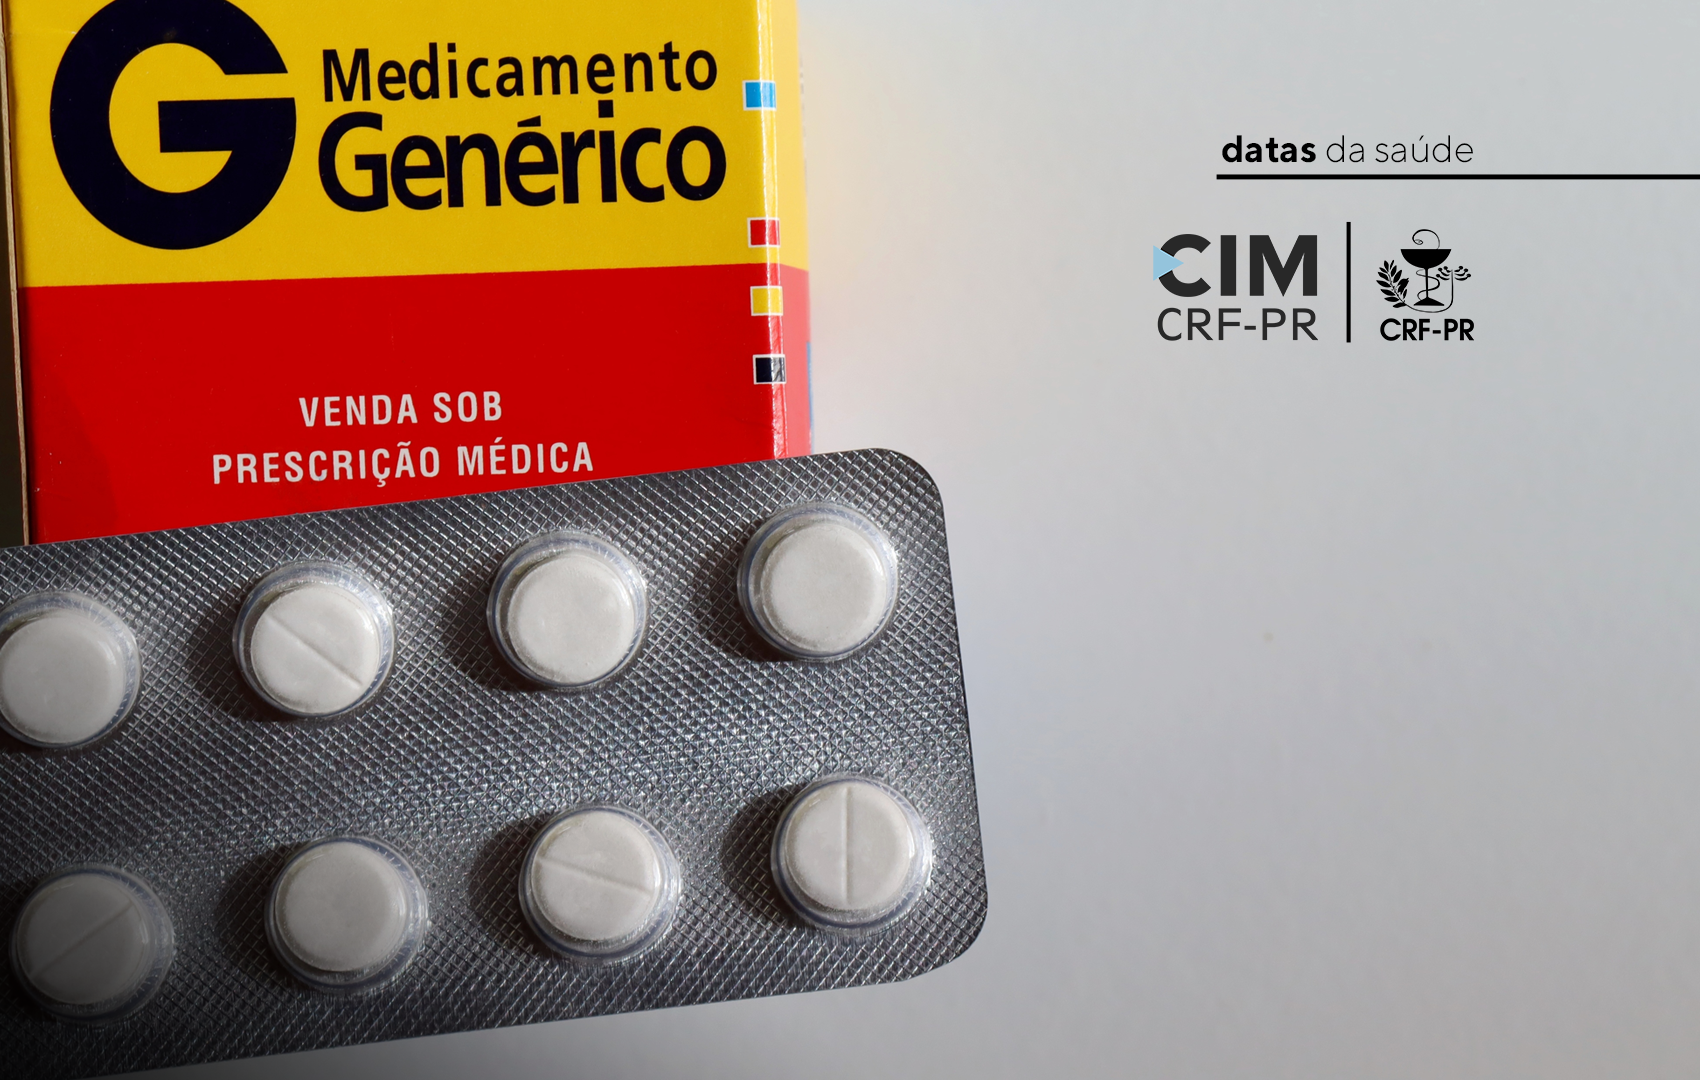 dia_nacional_do_medicamento_generico_site.png